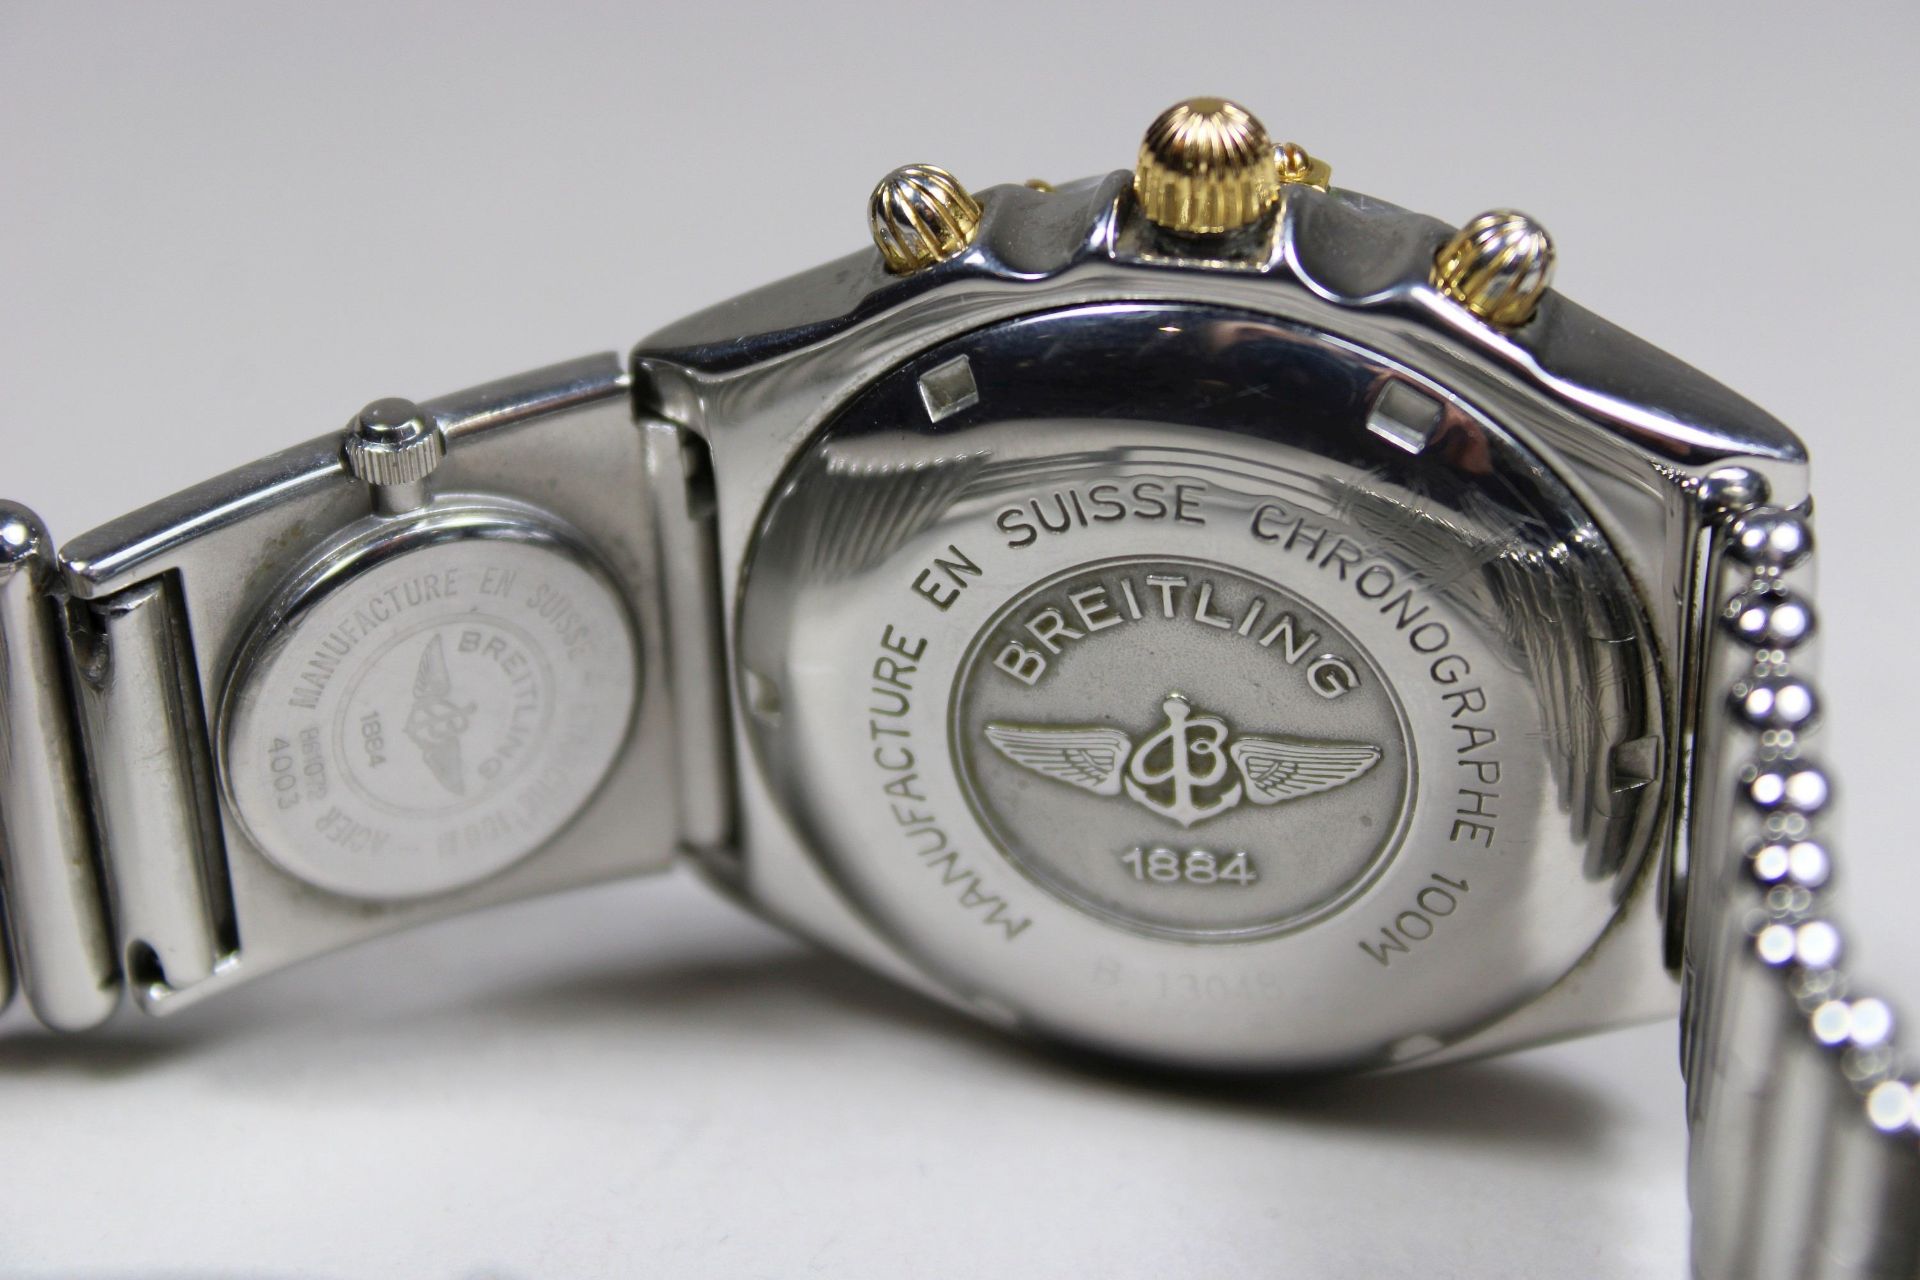 Herrenuhr Breitling Chronomat UTC Modul an Roleuaxband, Ref. B13048 144978, Herstellungsjahr: 1990- - Image 3 of 4